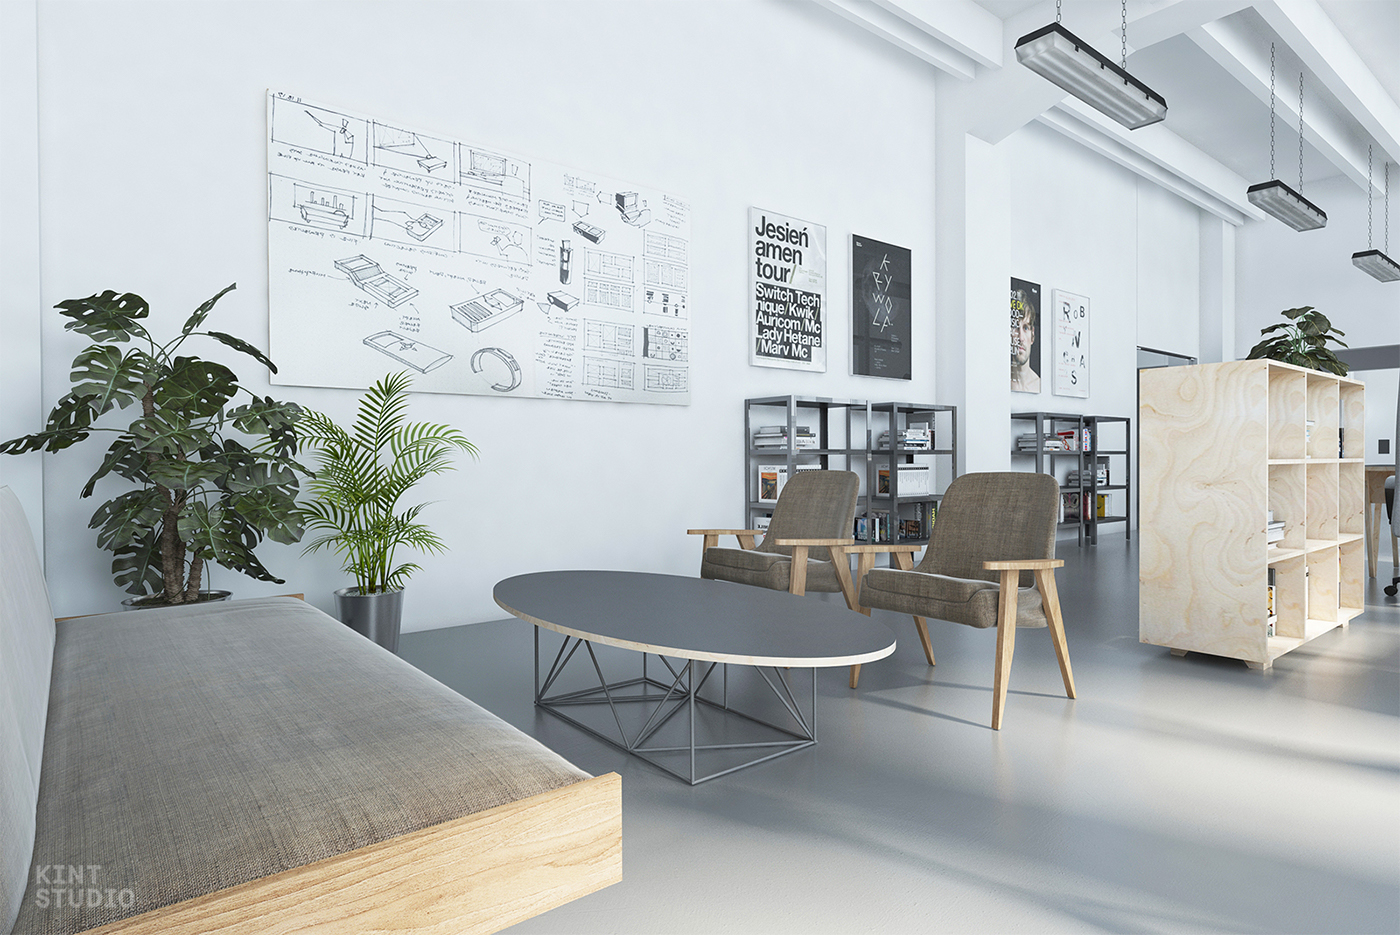 Interior interiordesign architecture industrialdesign officedesign LOFT design playwood furniture furnituredesign